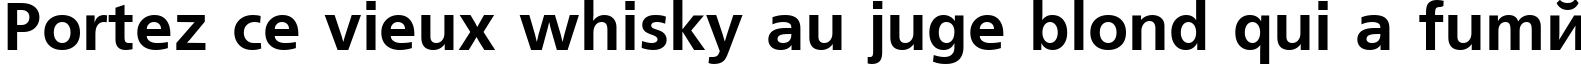 Пример написания шрифтом font180 текста на французском